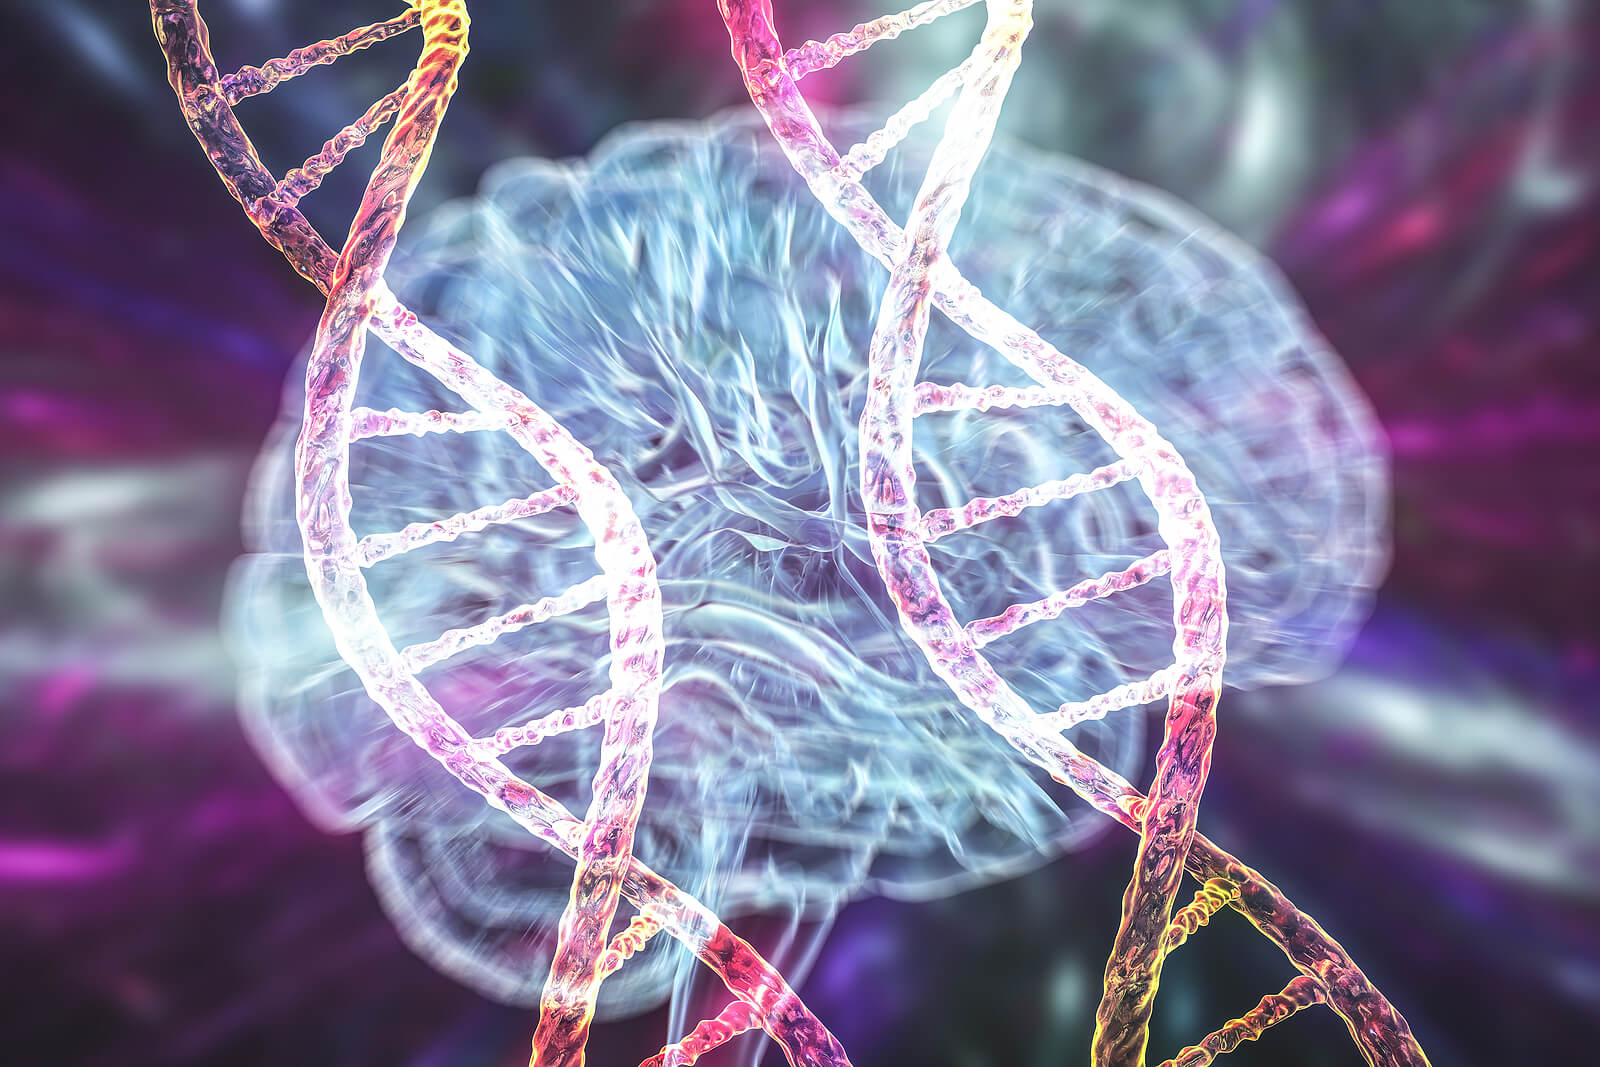 Le cause e i fattori di rischio della malattia di Parkinson includono la genetica